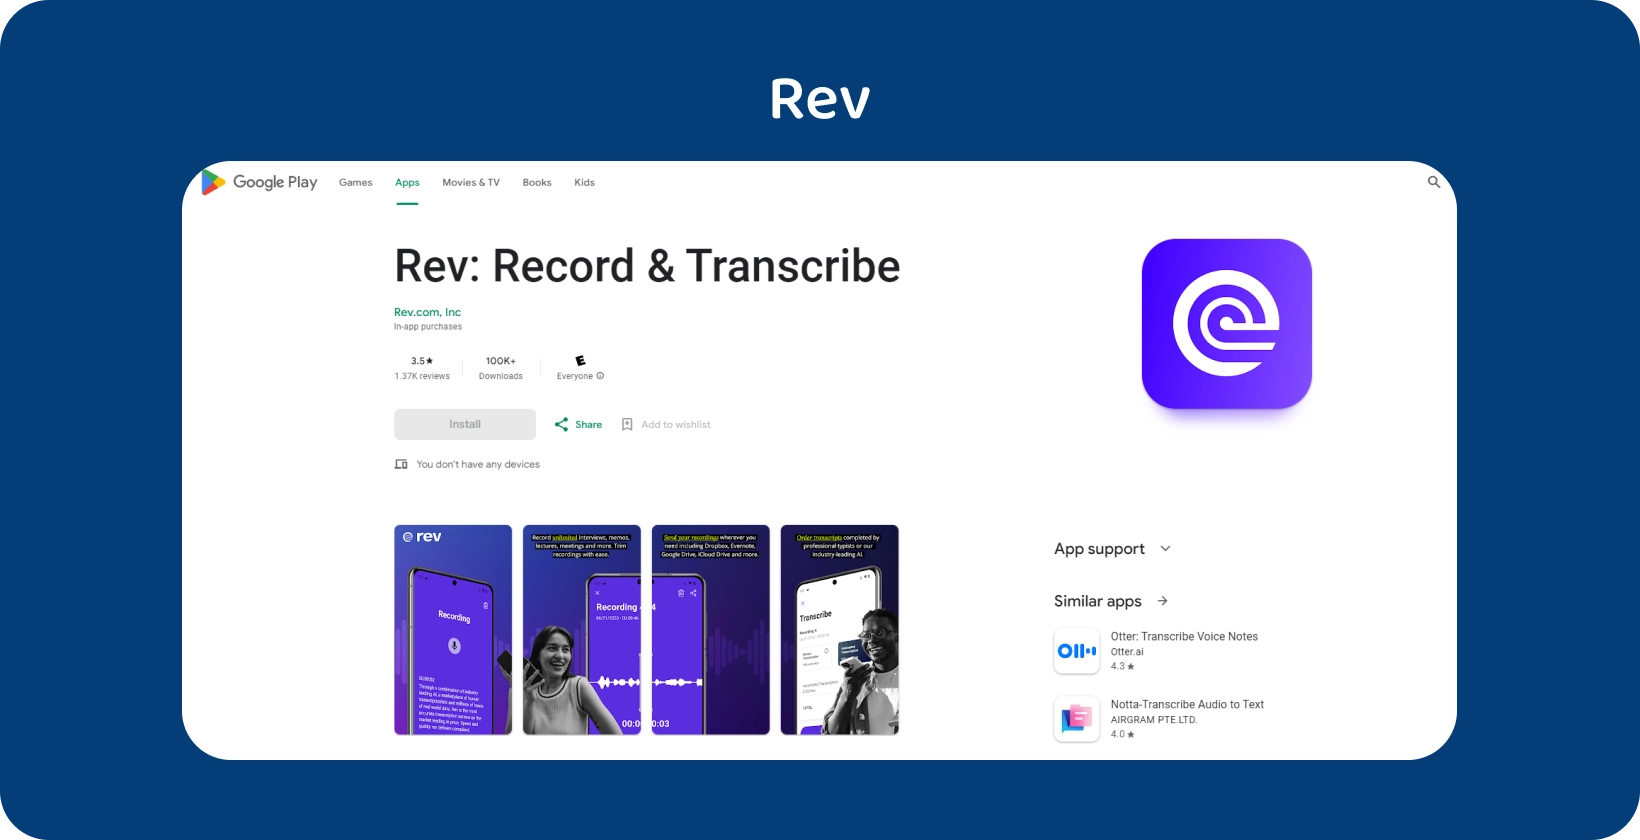 Google Play Store weergave van Rev app, met functies voor opname en transcriptie op Android apparaten.